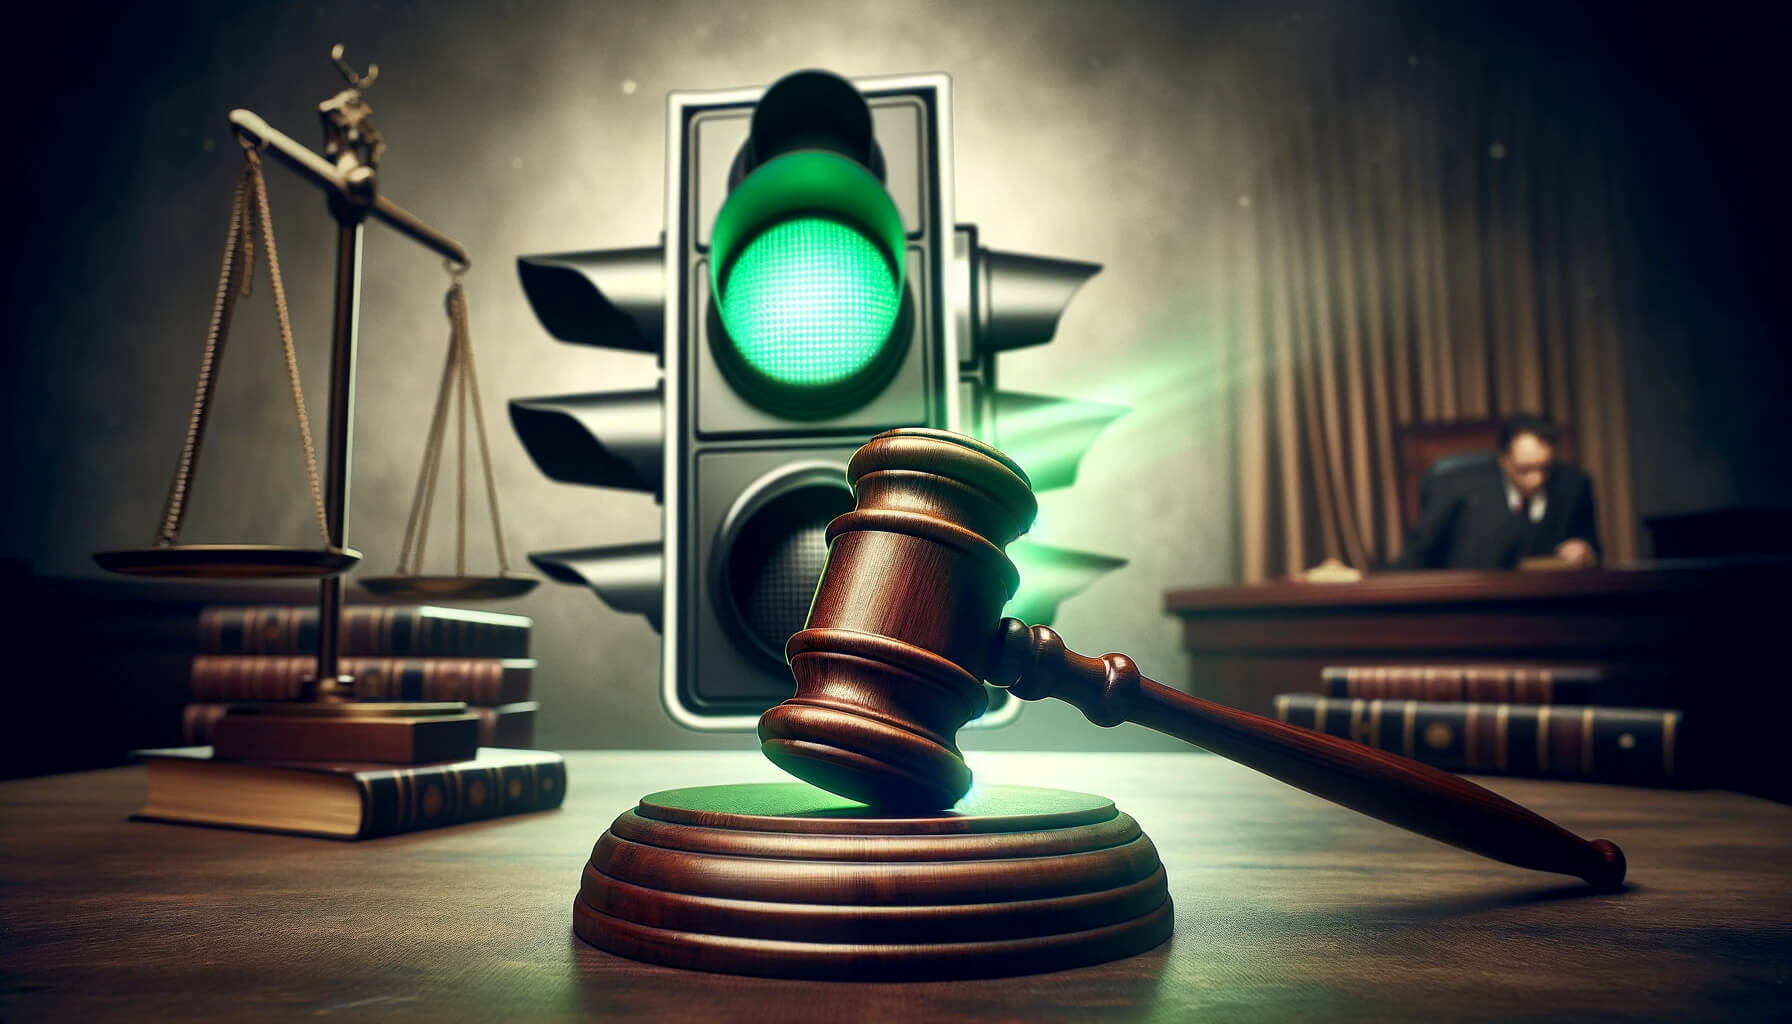  ftx blockfi settlement court between greenlights talks 